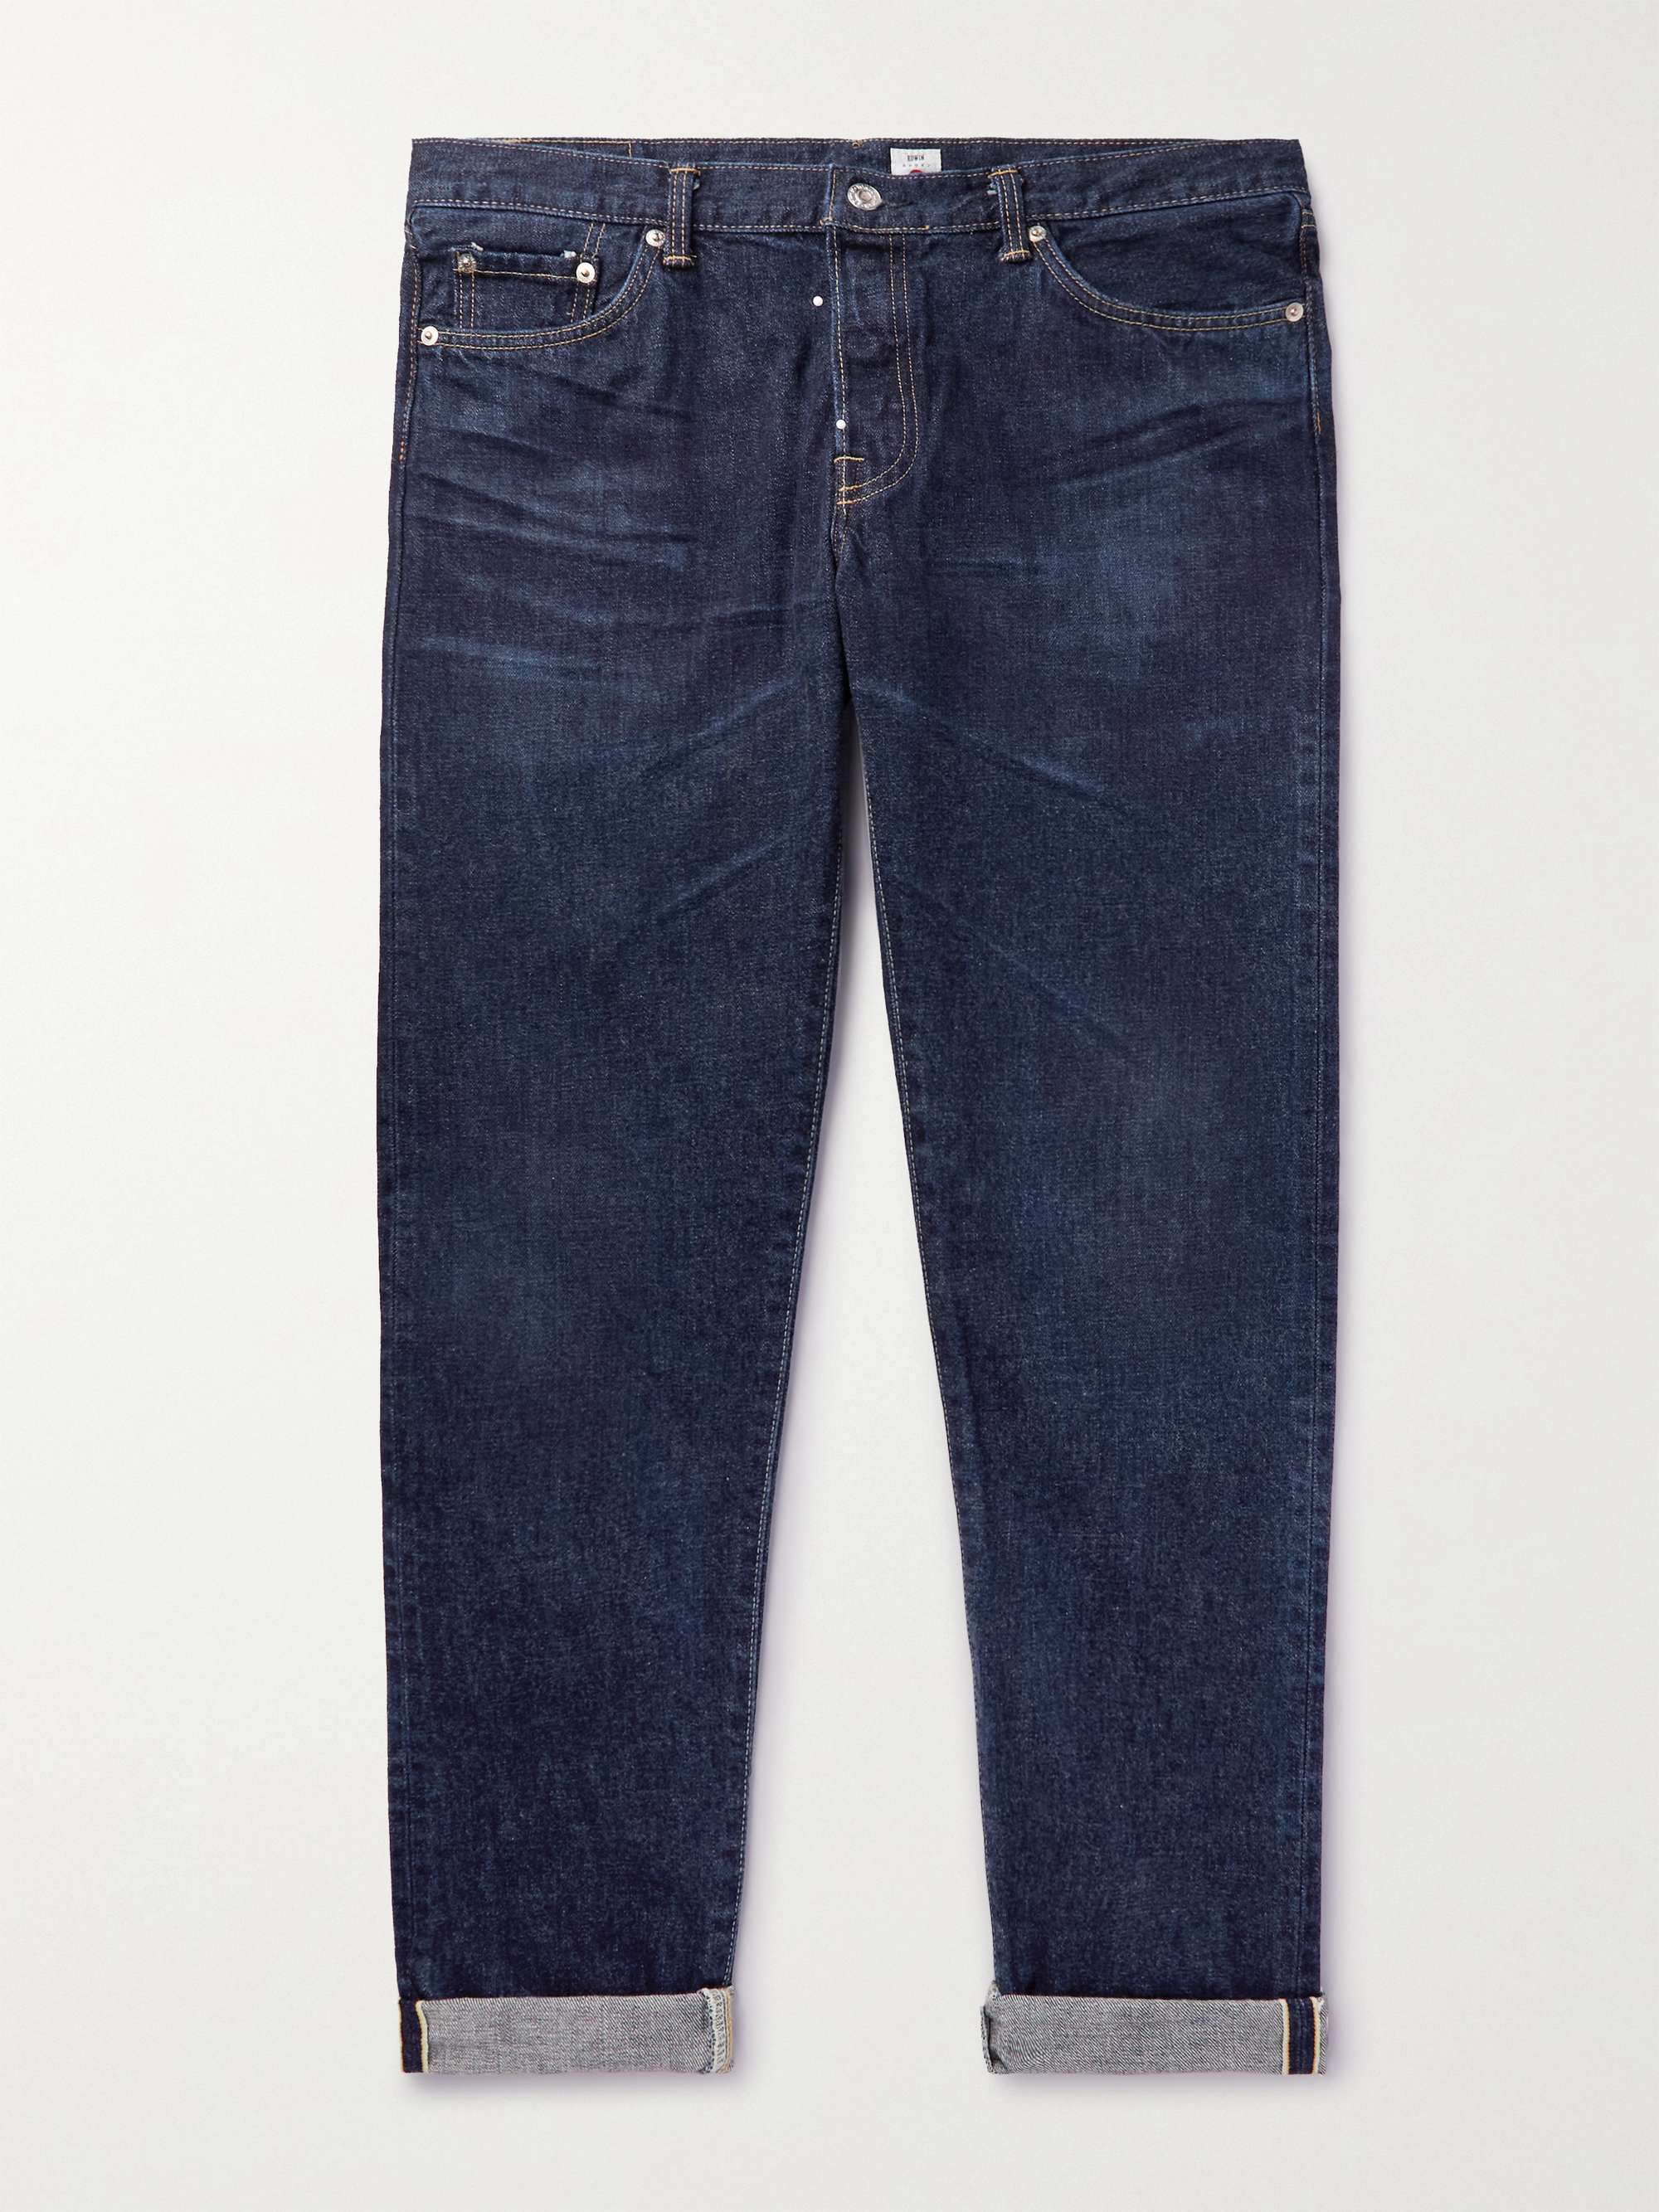 EDWIN Straight-Leg Selvedge Jeans for Men | MR PORTER